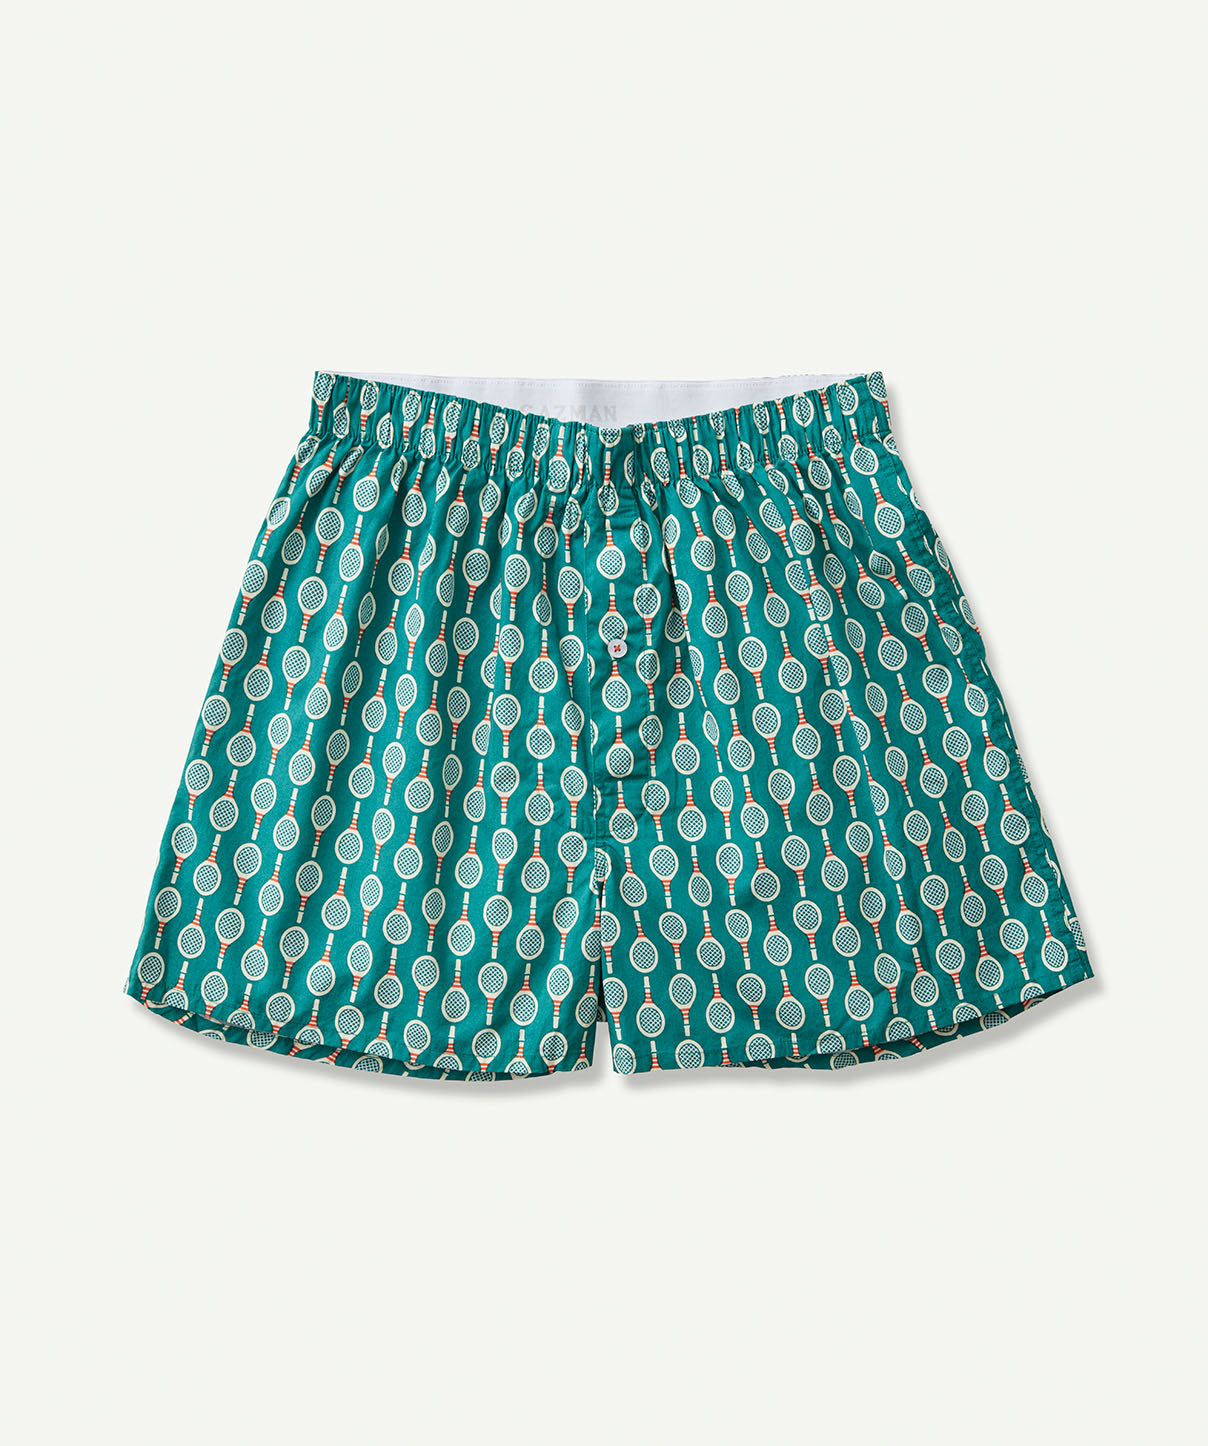 Match Point Print Boxers - Green - Underwear - GAZMAN